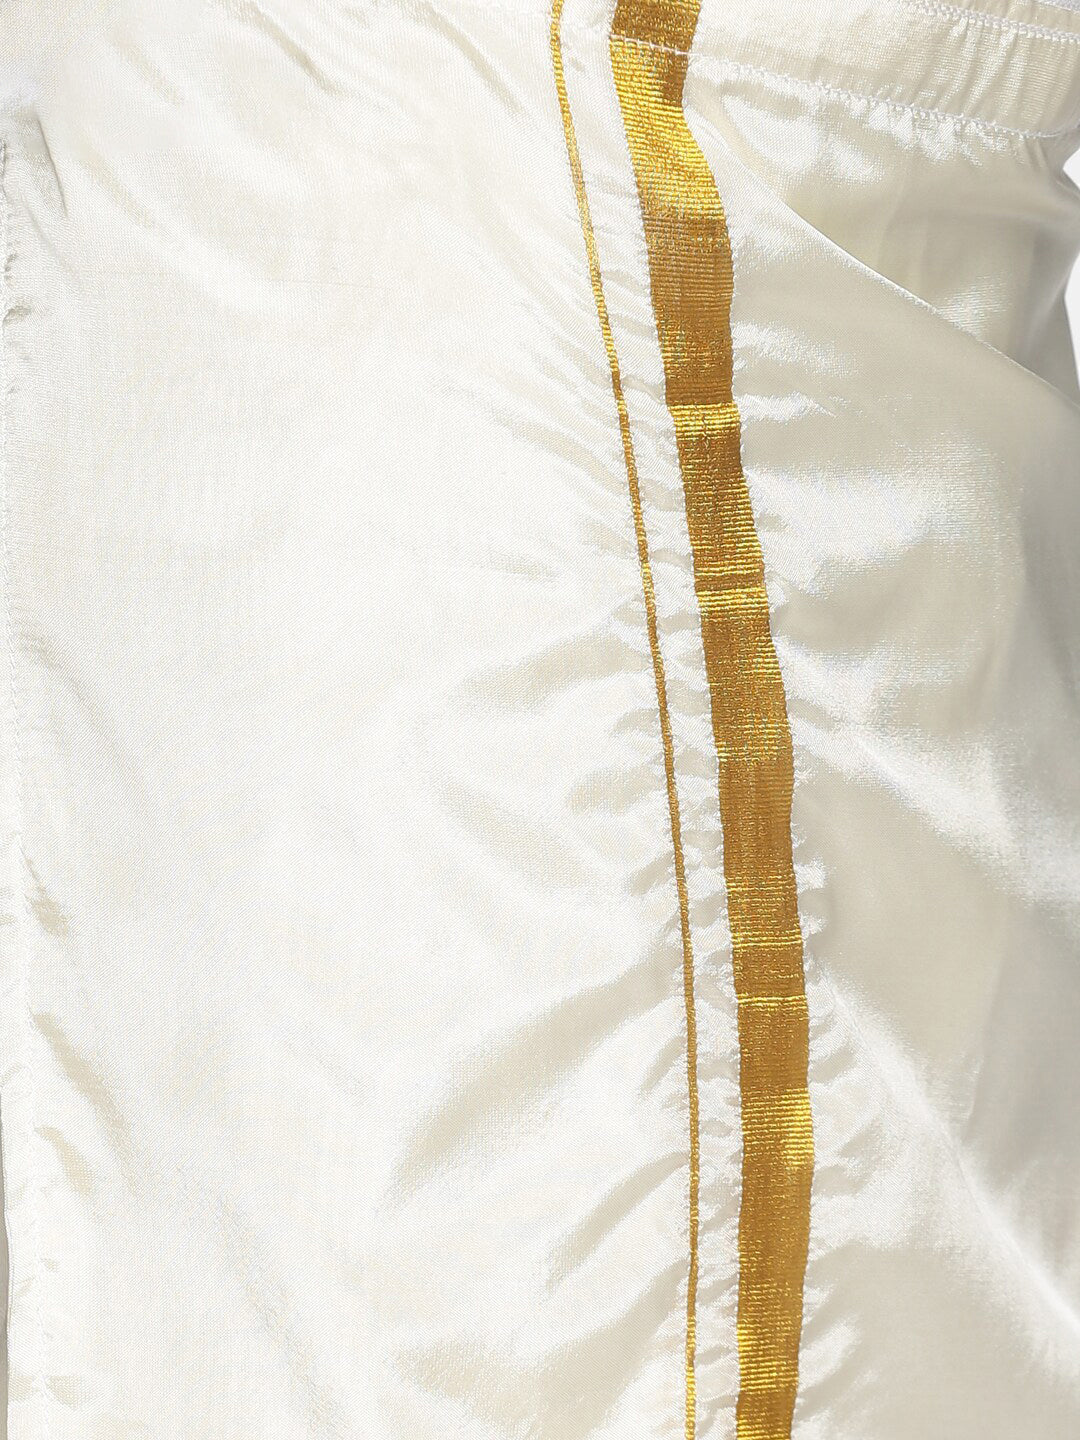 Sethukrishna Boys Maroon & White Solid Shirt and Dhoti Set - Distacart